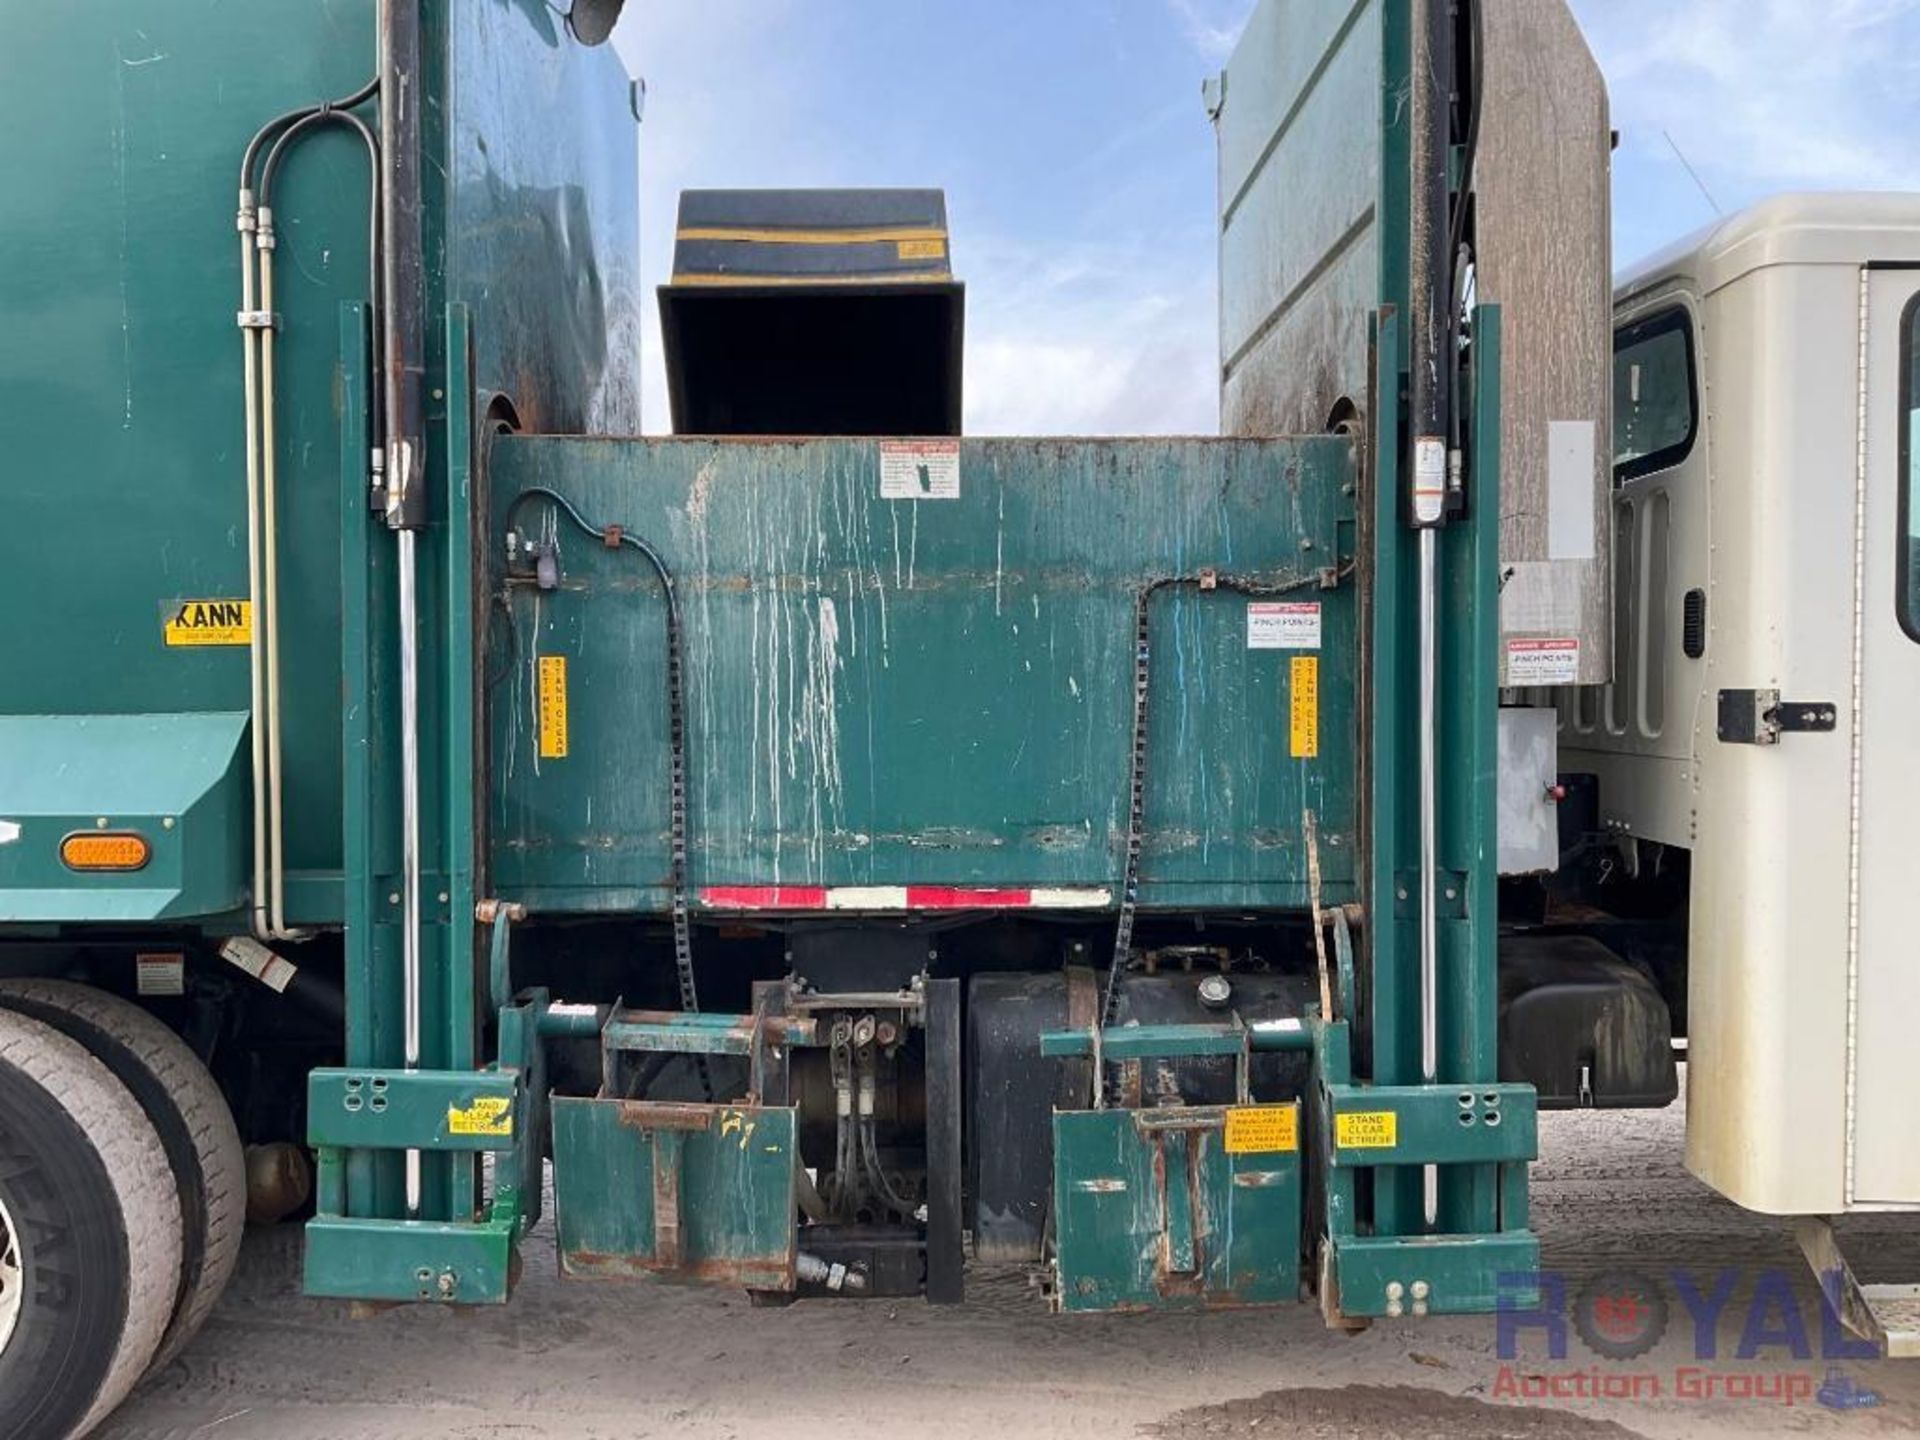 2014 Freightliner M2 106 Side Loader Garbage Truck - Image 19 of 36